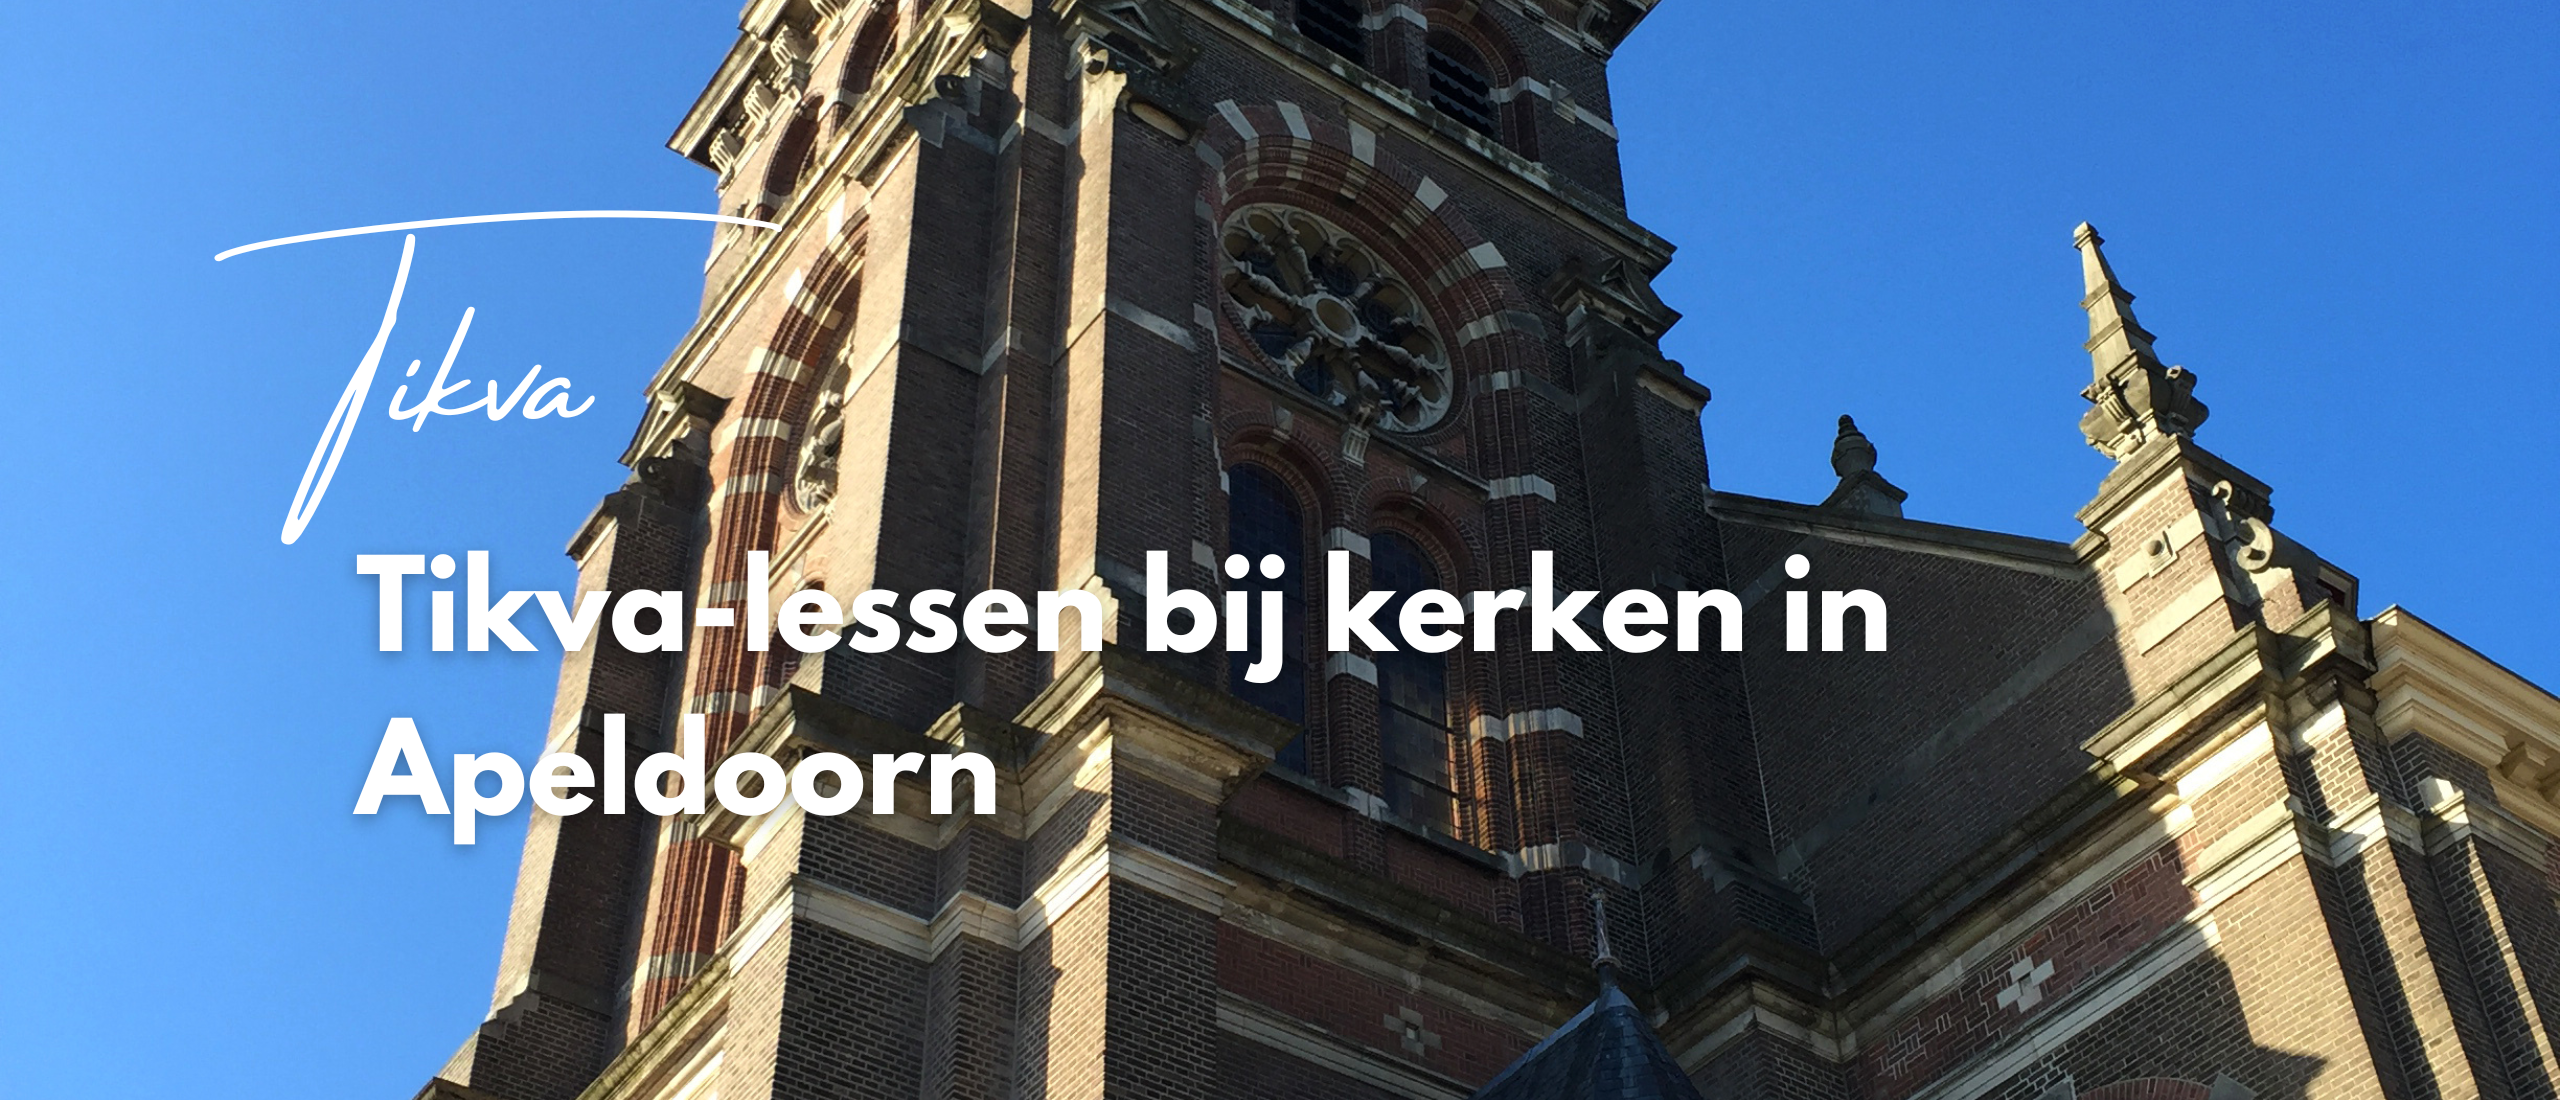 Tikva-lessen bij kerken in Apeldoorn